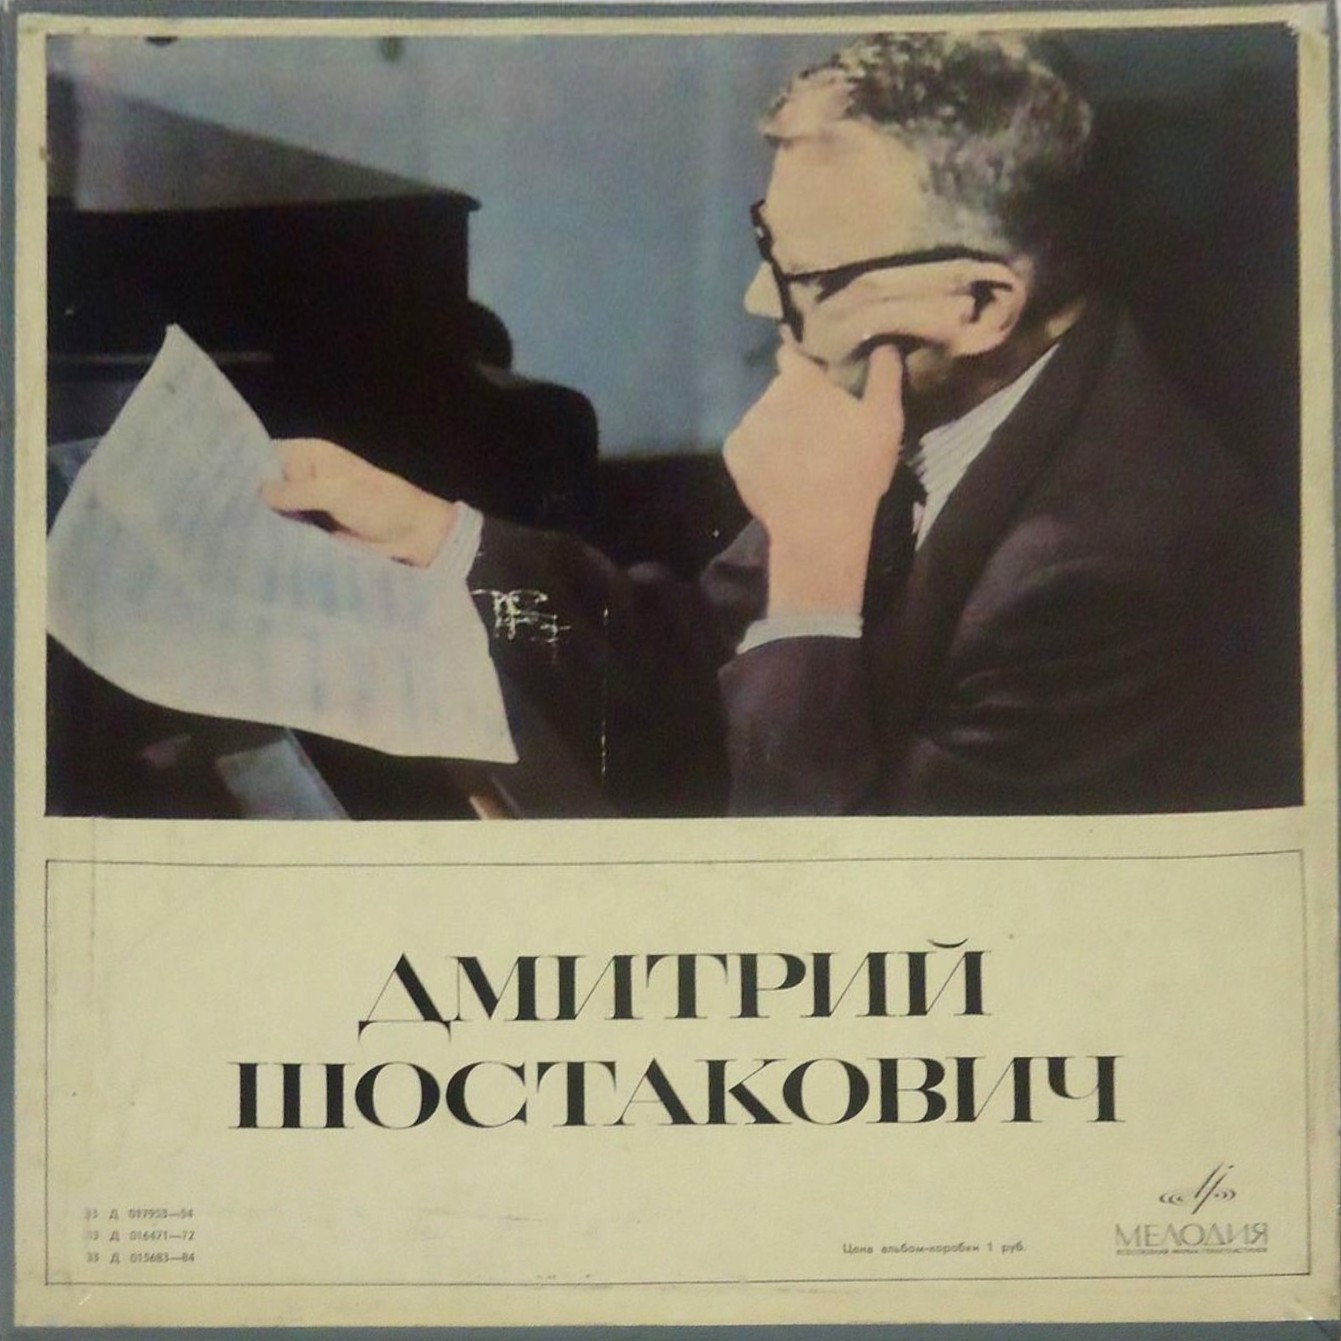 Дмитрий Шостакович [3 пл., 1966 г.]